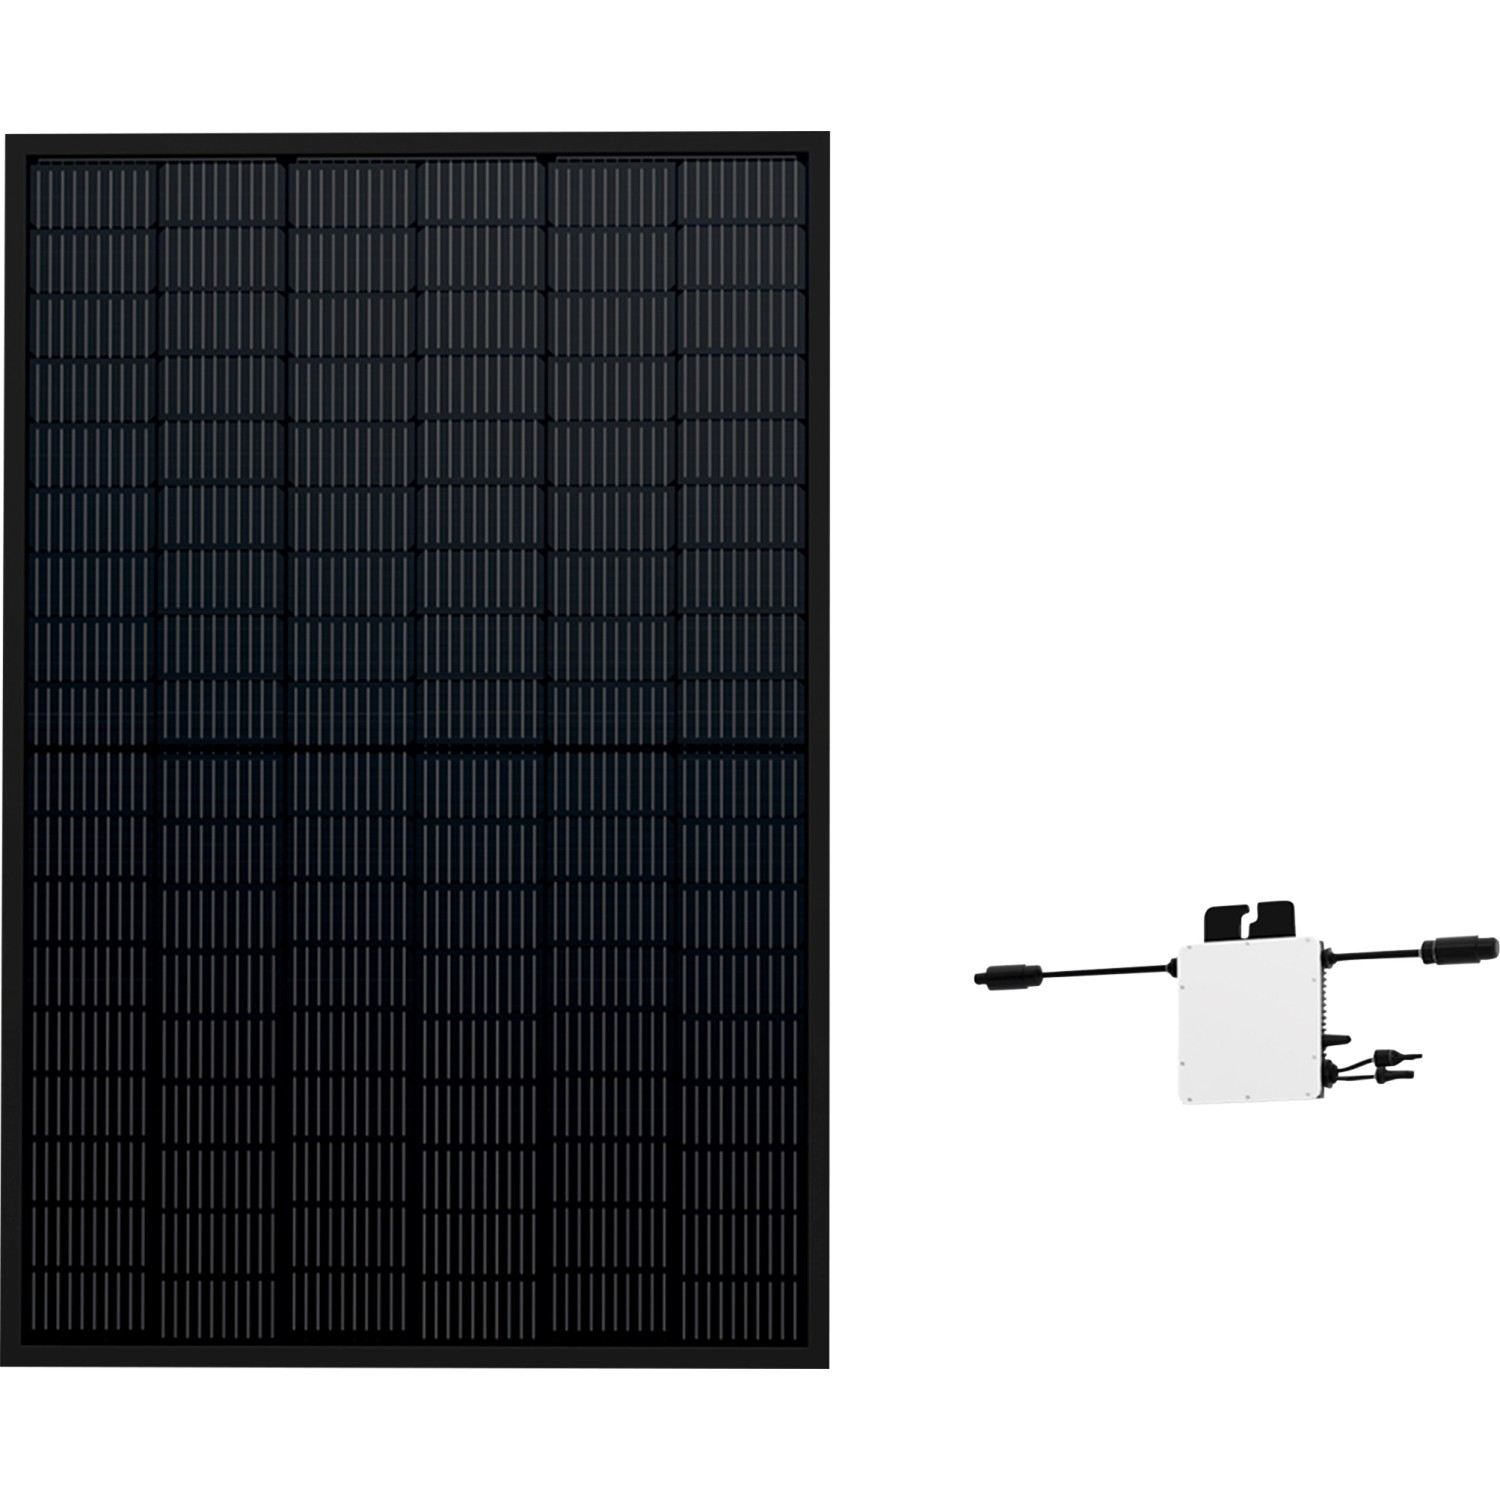 Swissinno Ultraschall-Tier-Vertreiber Solar 100 m² kaufen bei OBI